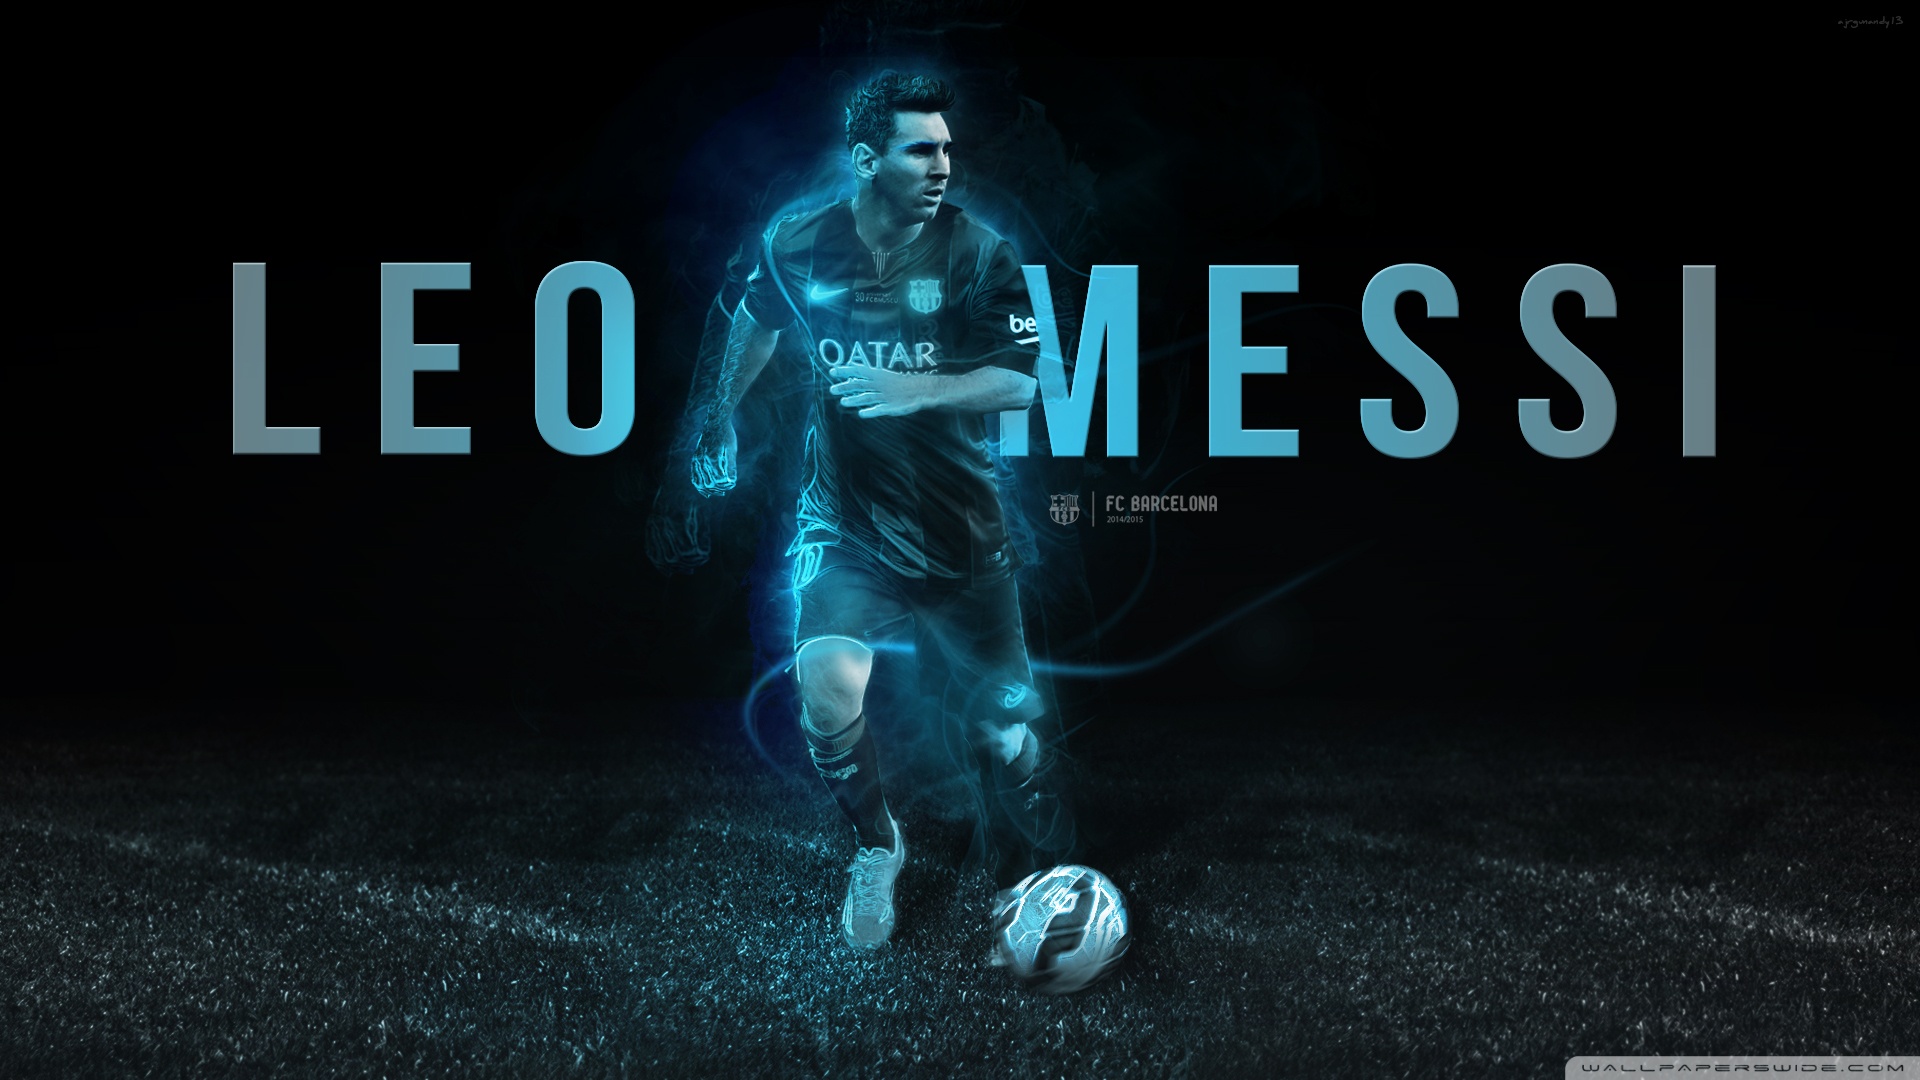 Leo Messi Wallpapers: Những hình nền với hình ảnh của cầu thủ bóng đá siêu sao Lionel Messi sẽ khiến màn hình điện thoại hay máy tính của bạn trở nên sống động và đầy chất thể thao. Hãy xem những tác phẩm nghệ thuật này để cảm nhận sự khéo léo và sáng tạo của những người thiết kế.